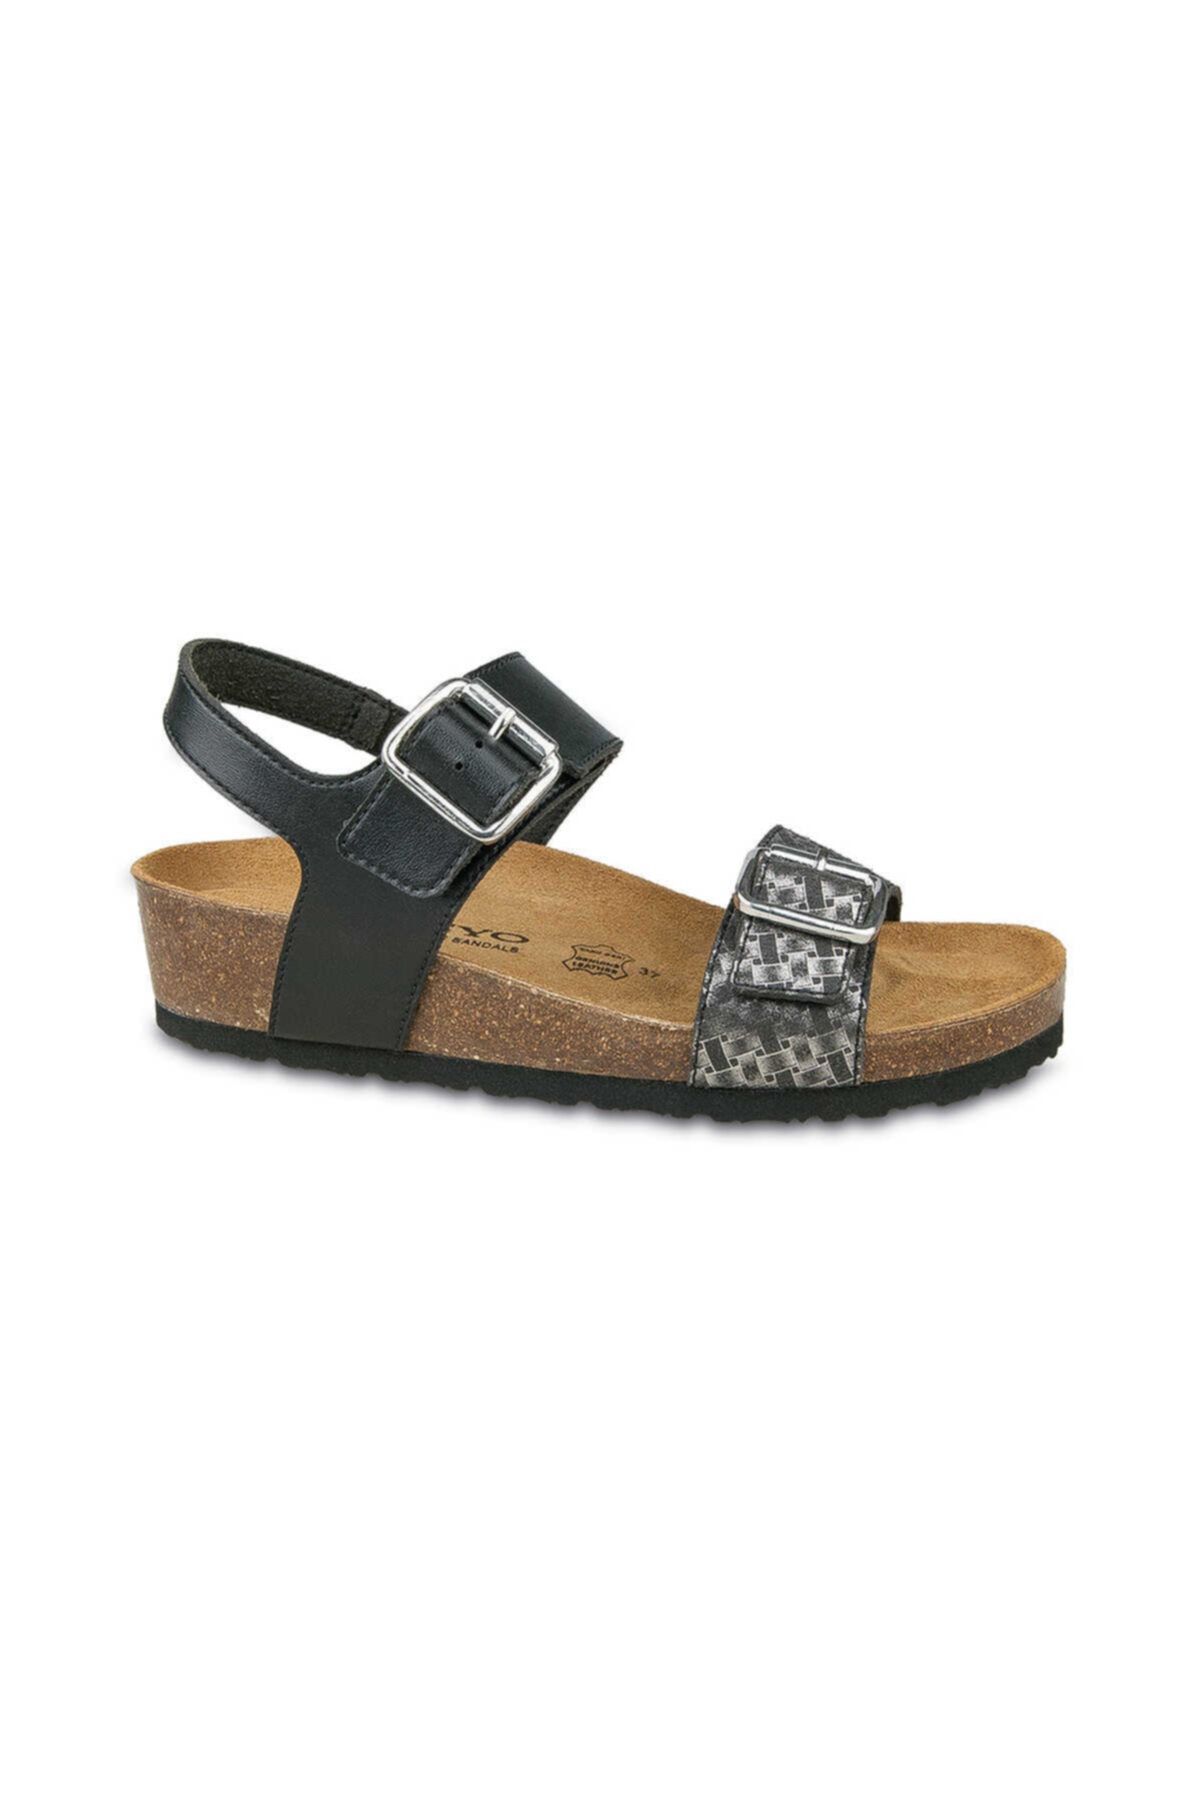 Ceyo Kadın Siyah Sandalet 9974-2